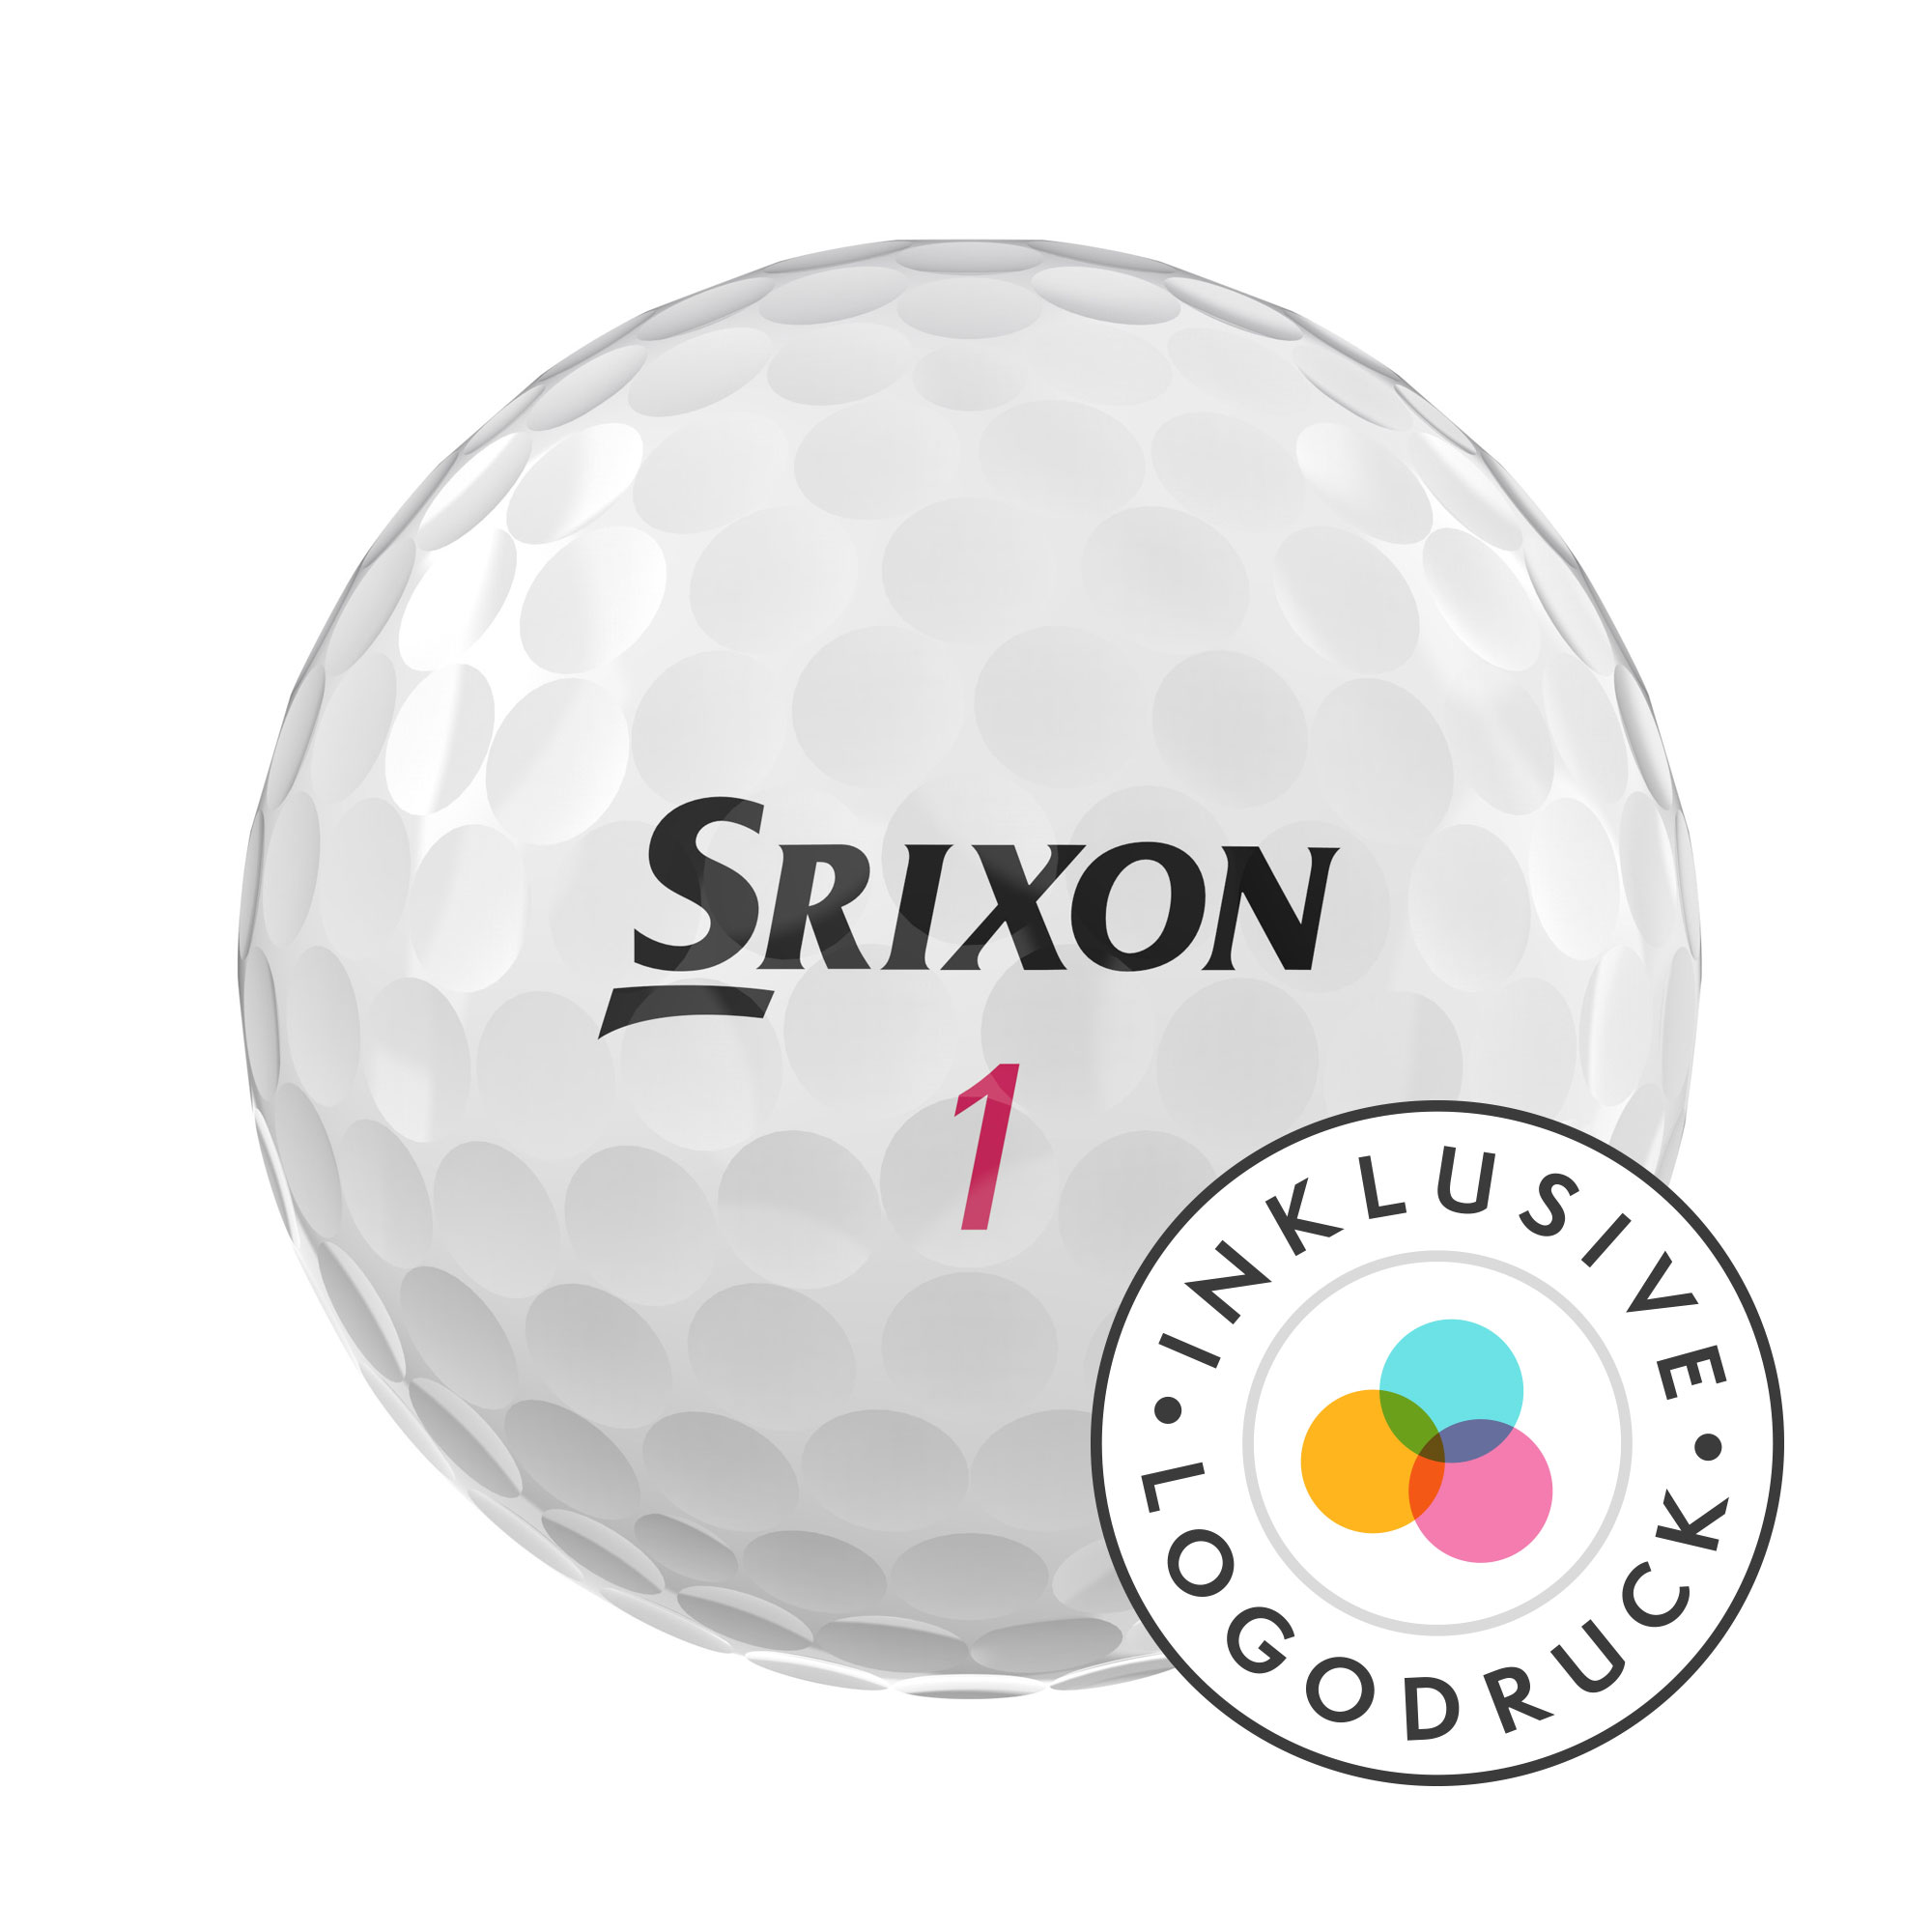 Srixon Distance Golfbälle bedruckt, weiss (VPE à 12 Bälle)